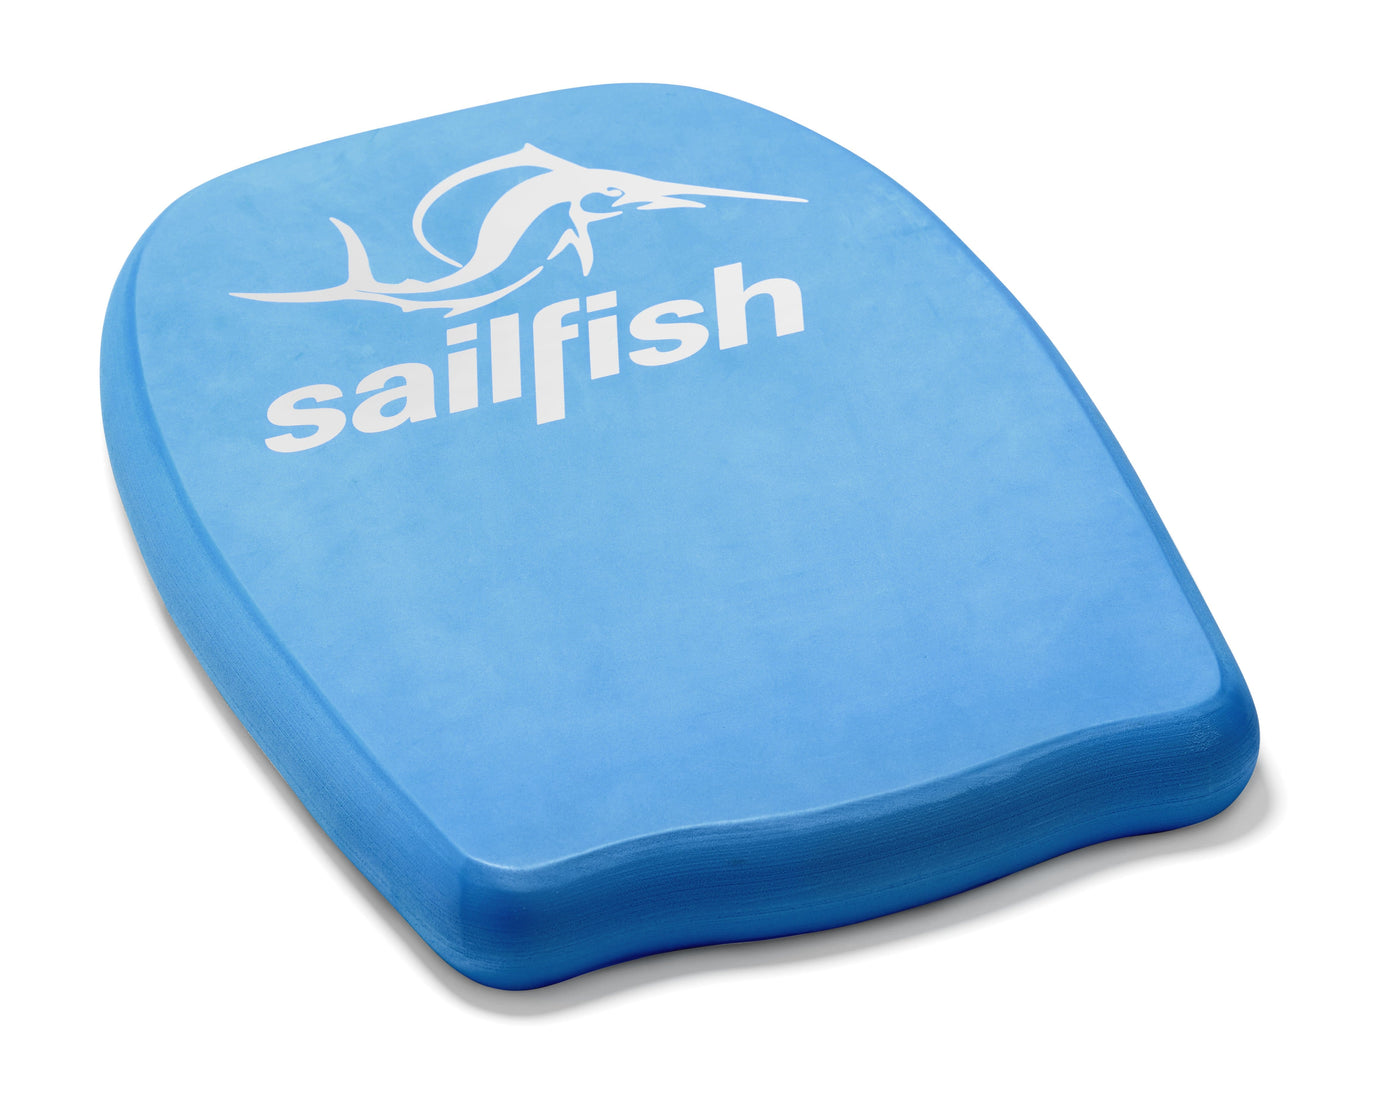 sailfish Kickboard